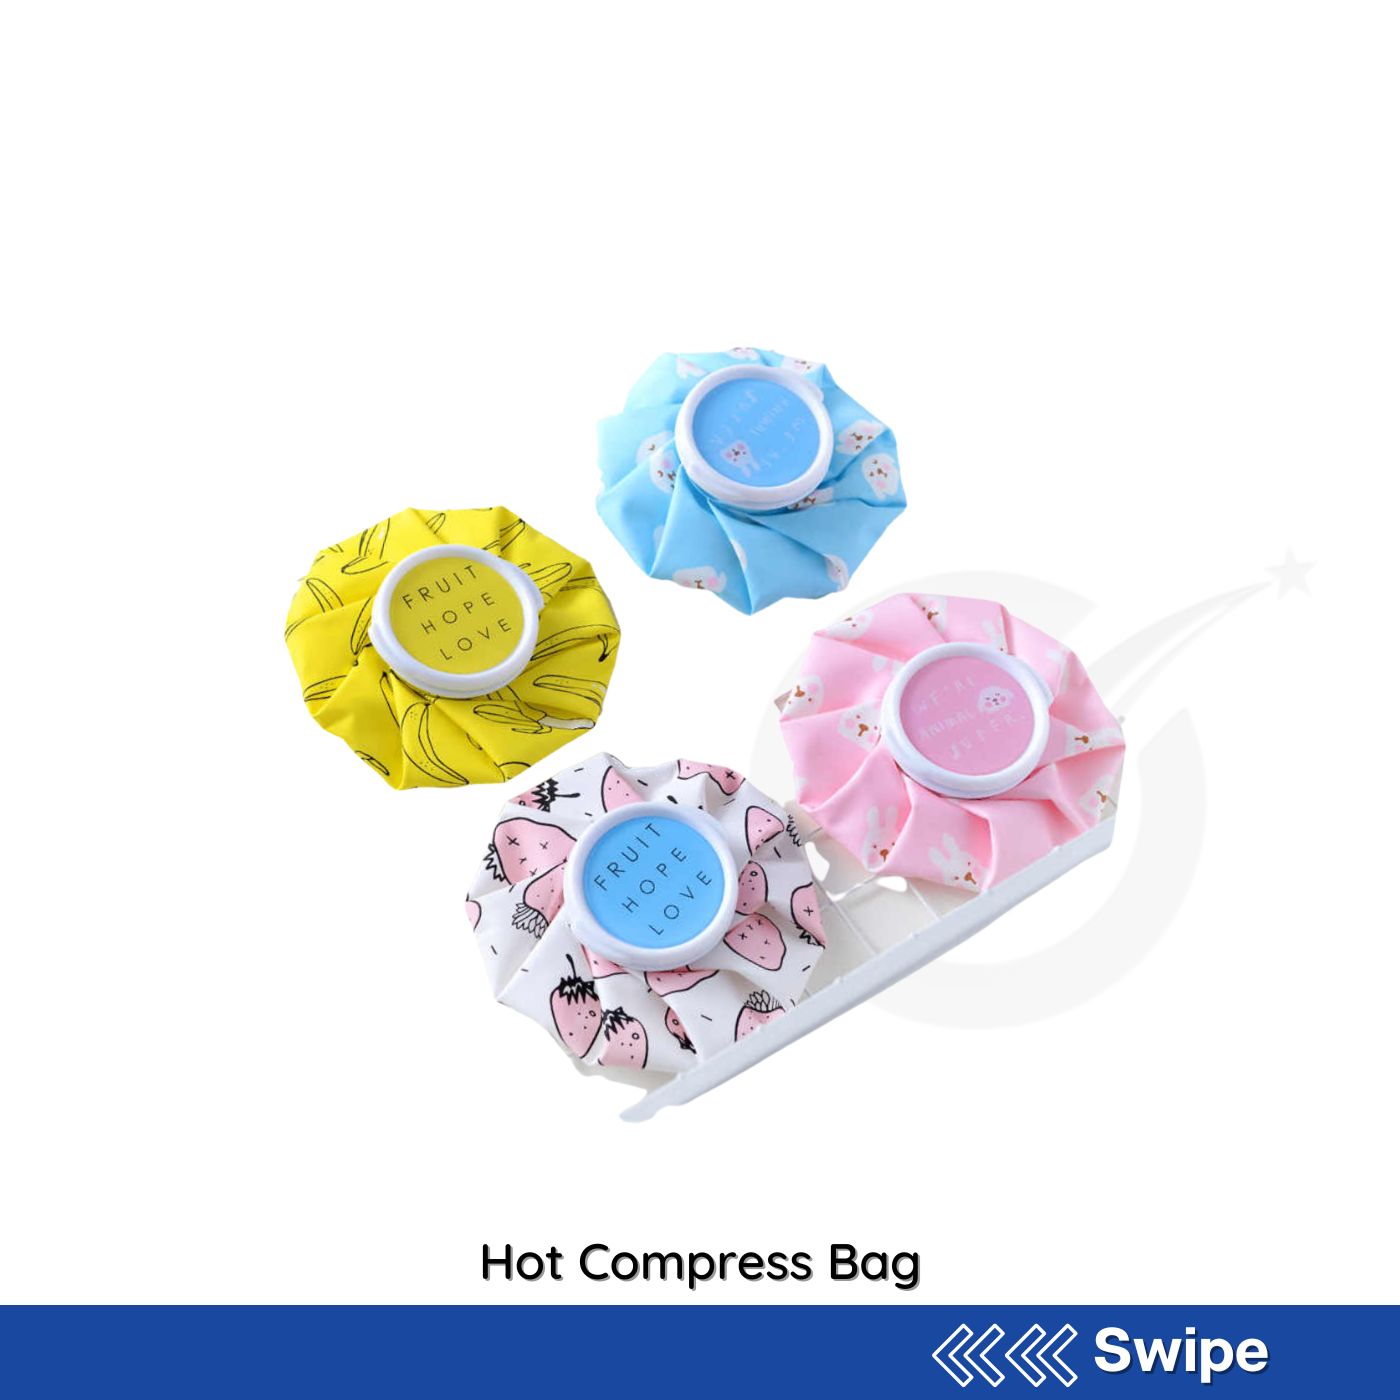 Hot Compress Bag